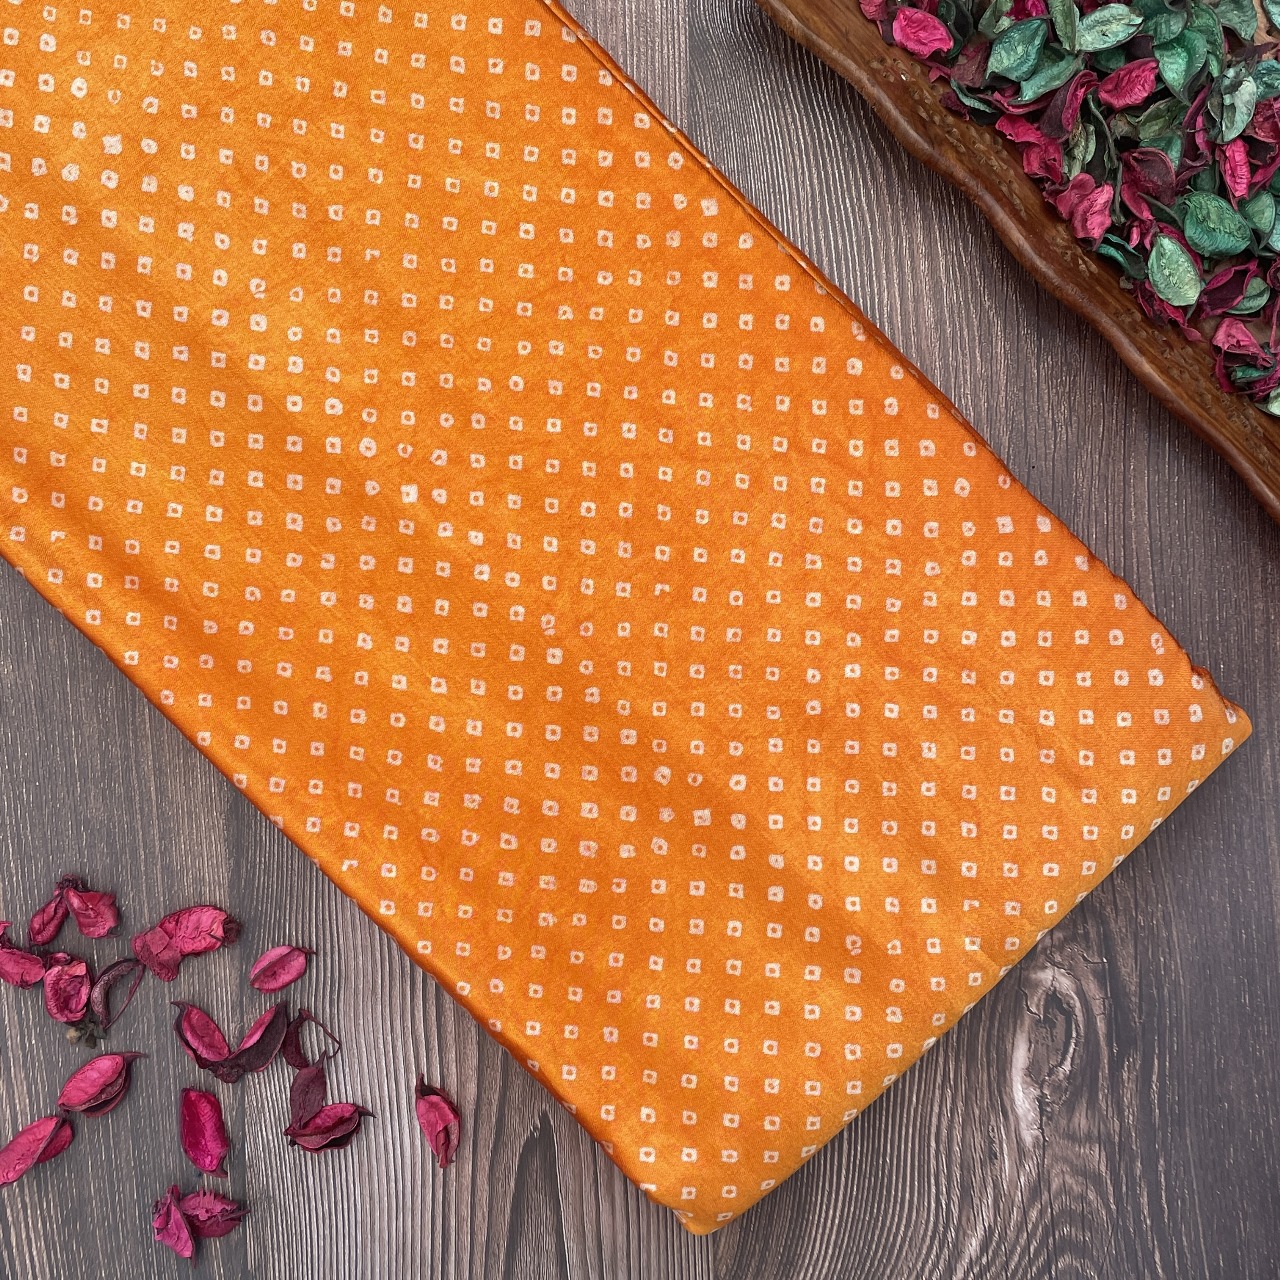 Mashru Silk Hand Block Printed Fabric – Orange - Bandhani